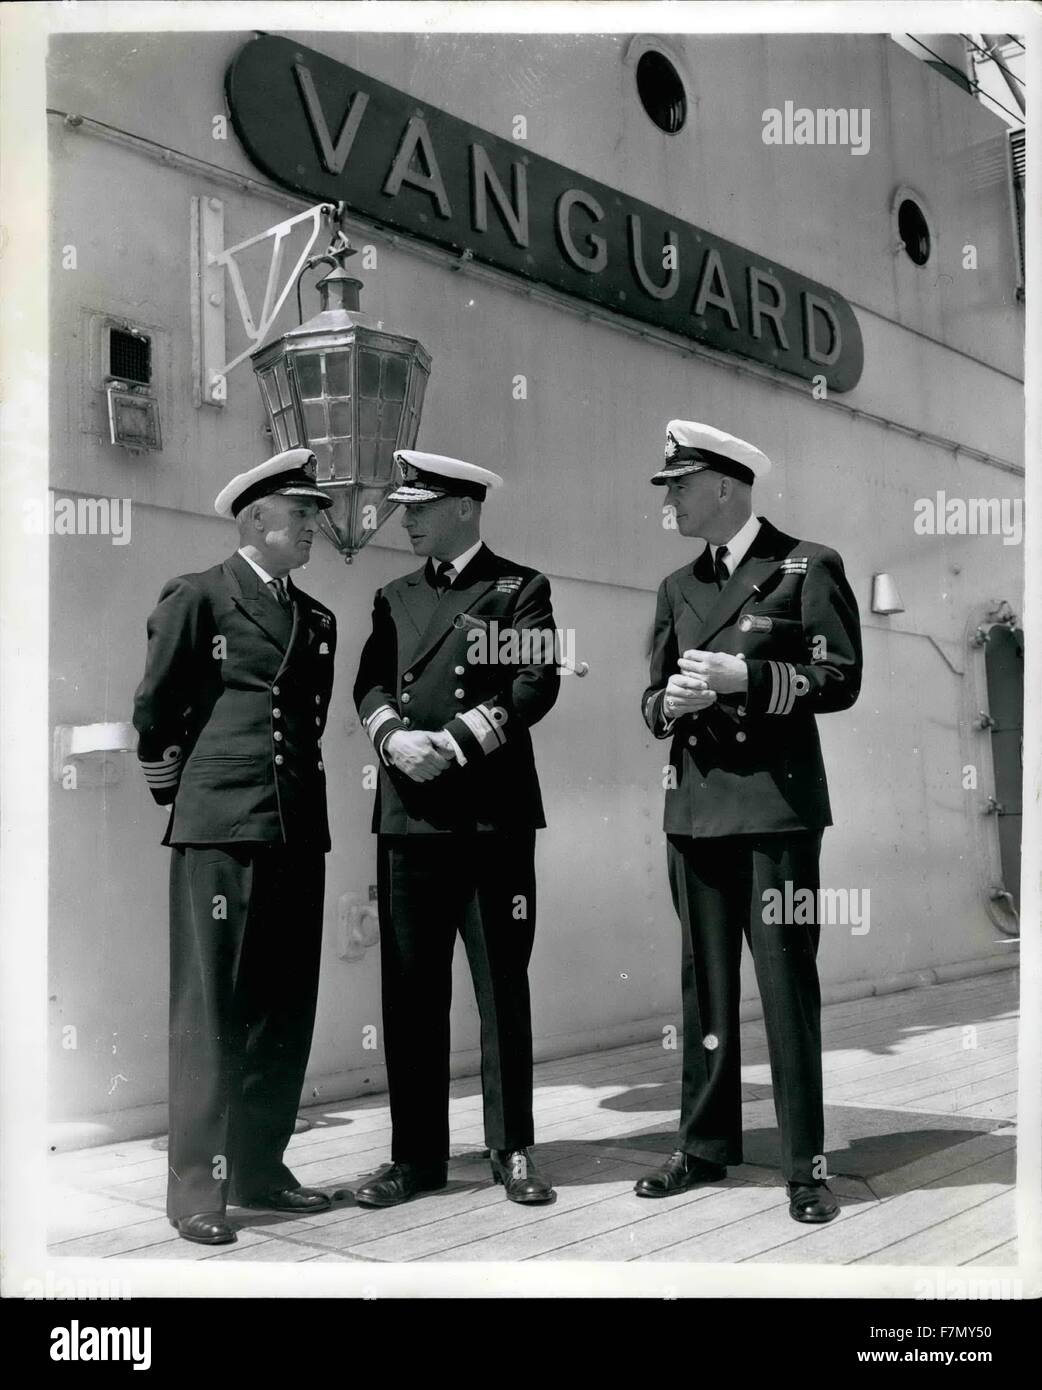 1949 - Presse Besuch HMS Vanguard - in Portsmouth zum letztenmal. Mitglieder der Presse besucht H.M.S Vanguard - Portsmouth heute zum letzten Mal. Das Schiff soll noch in diesem Jahr aufgebrochen werden. Sie ist von 44.500 Tonnen - 0,000,000 - Kosten und hat nie in Aktion - wie sie zu spät für den Krieg im April 1946 abgeschlossen war. Keystone-Fotoshows: Drei Offiziere an Bord des Schiffes heute - L-r: Capt N.N. Fisher OBE. R.N Flagge Kapitän und Senior Officer Reserveflotte, Portsmouth; Flaggoffizier Kommandierender Reserveflotte - Konteradmiral J. Grant D.S.O; und Commander H.J.A. Brooke D.S.C, Konzernleitung Stockfoto